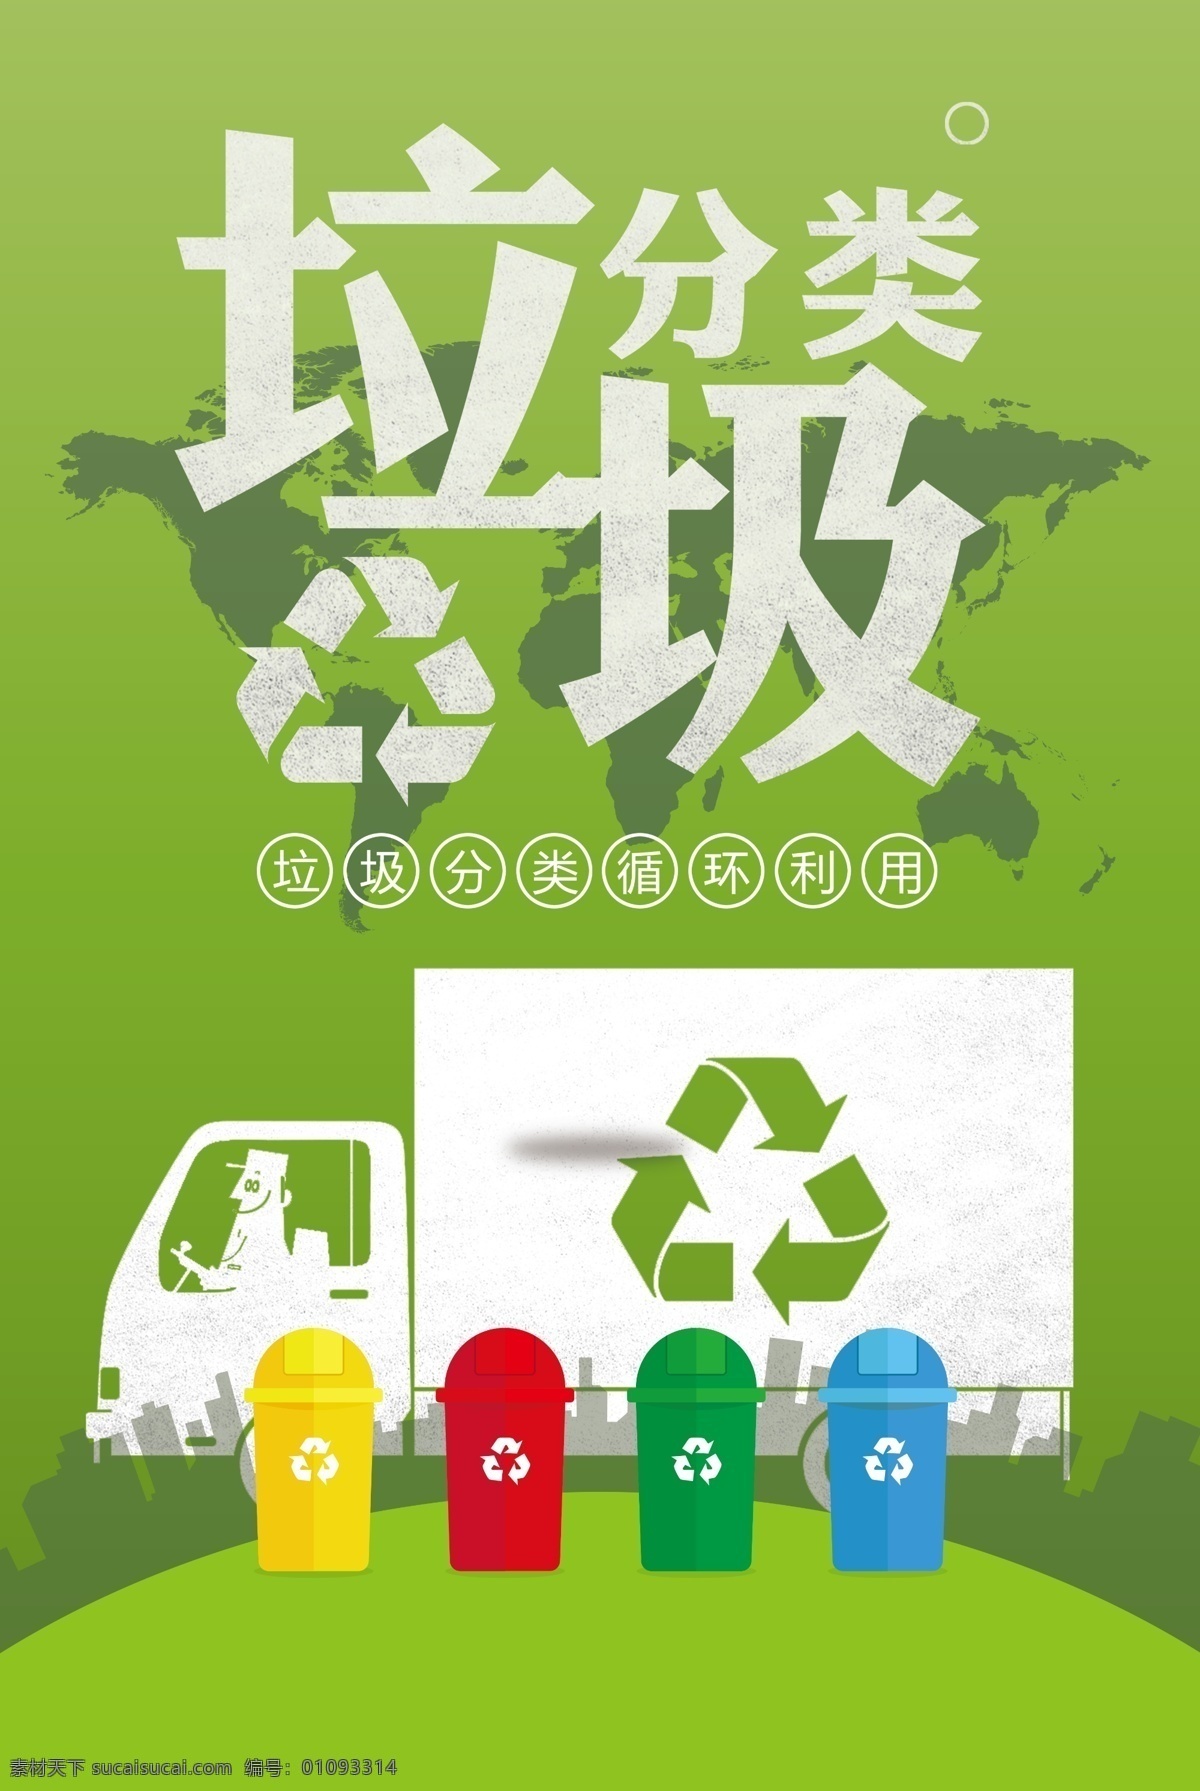 垃圾 分类 环保 海报 垃圾分类 垃圾分类海报 环保海报 社区 学校 小学教育 重视环保 环境保护